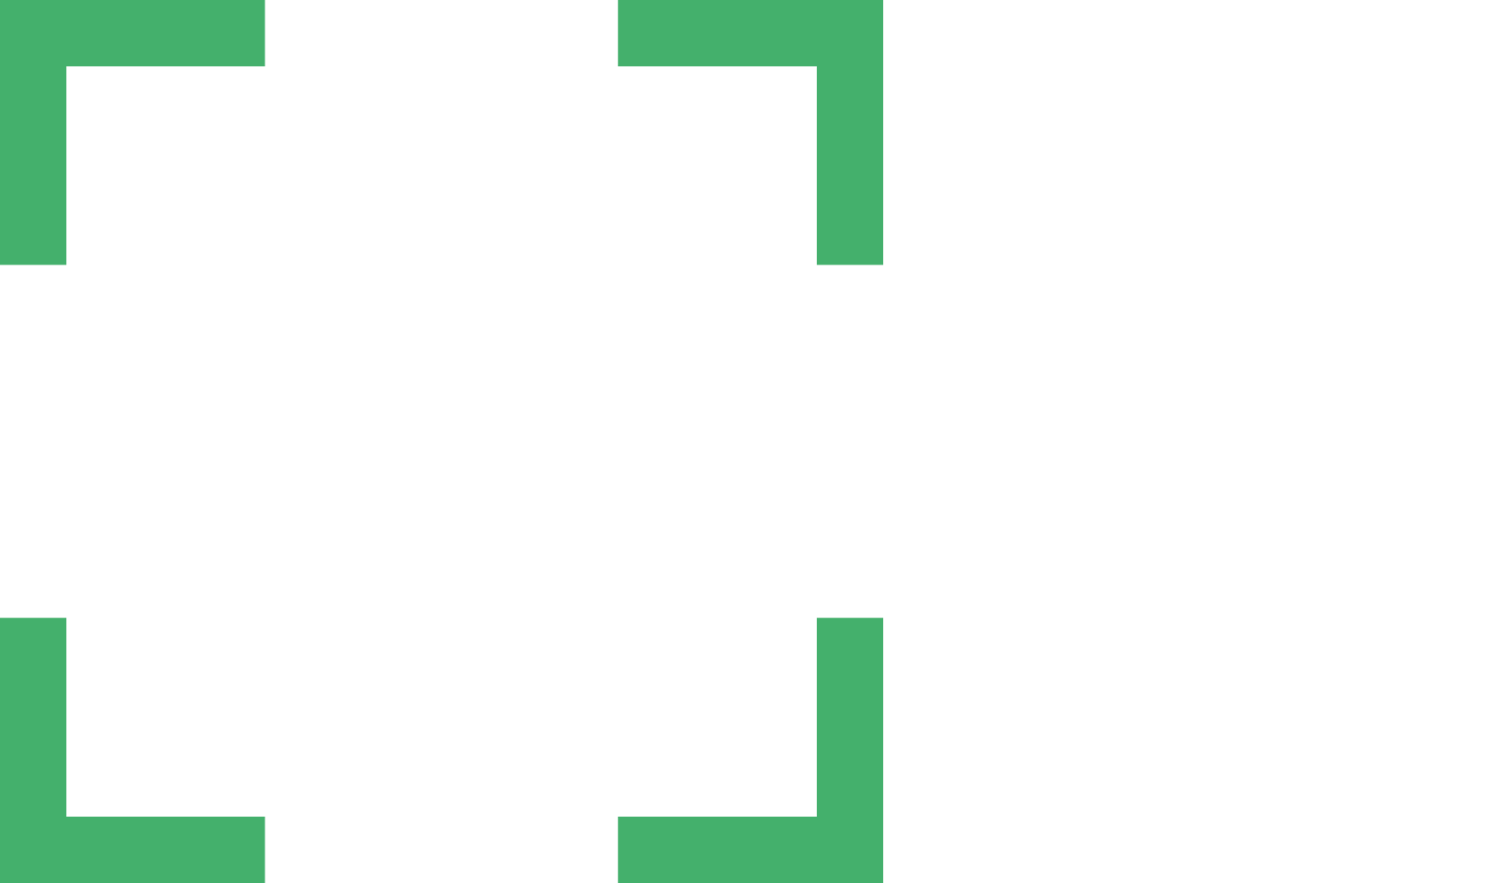 BEEBA